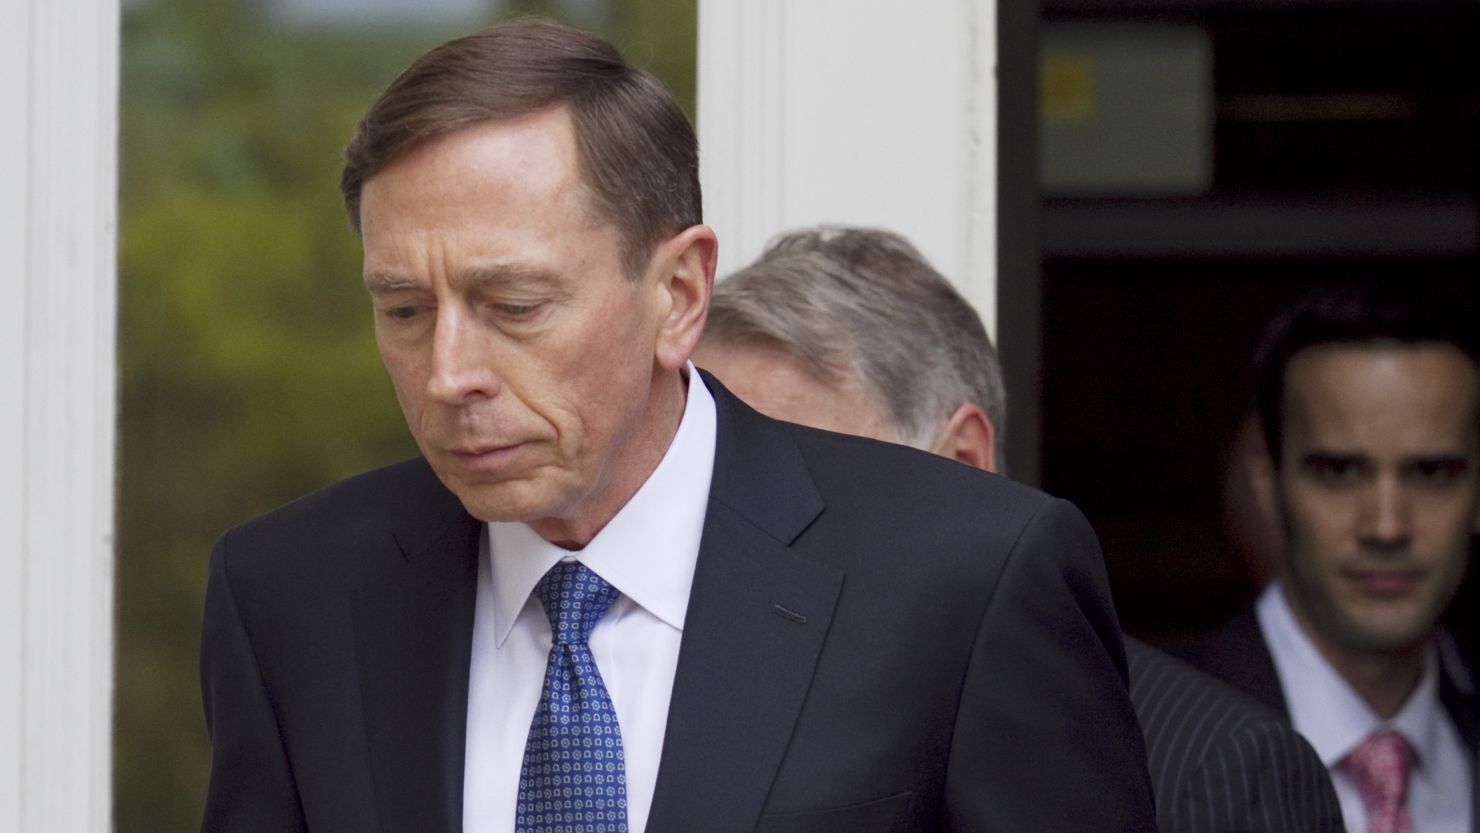 David Petraeus april 23, 2015